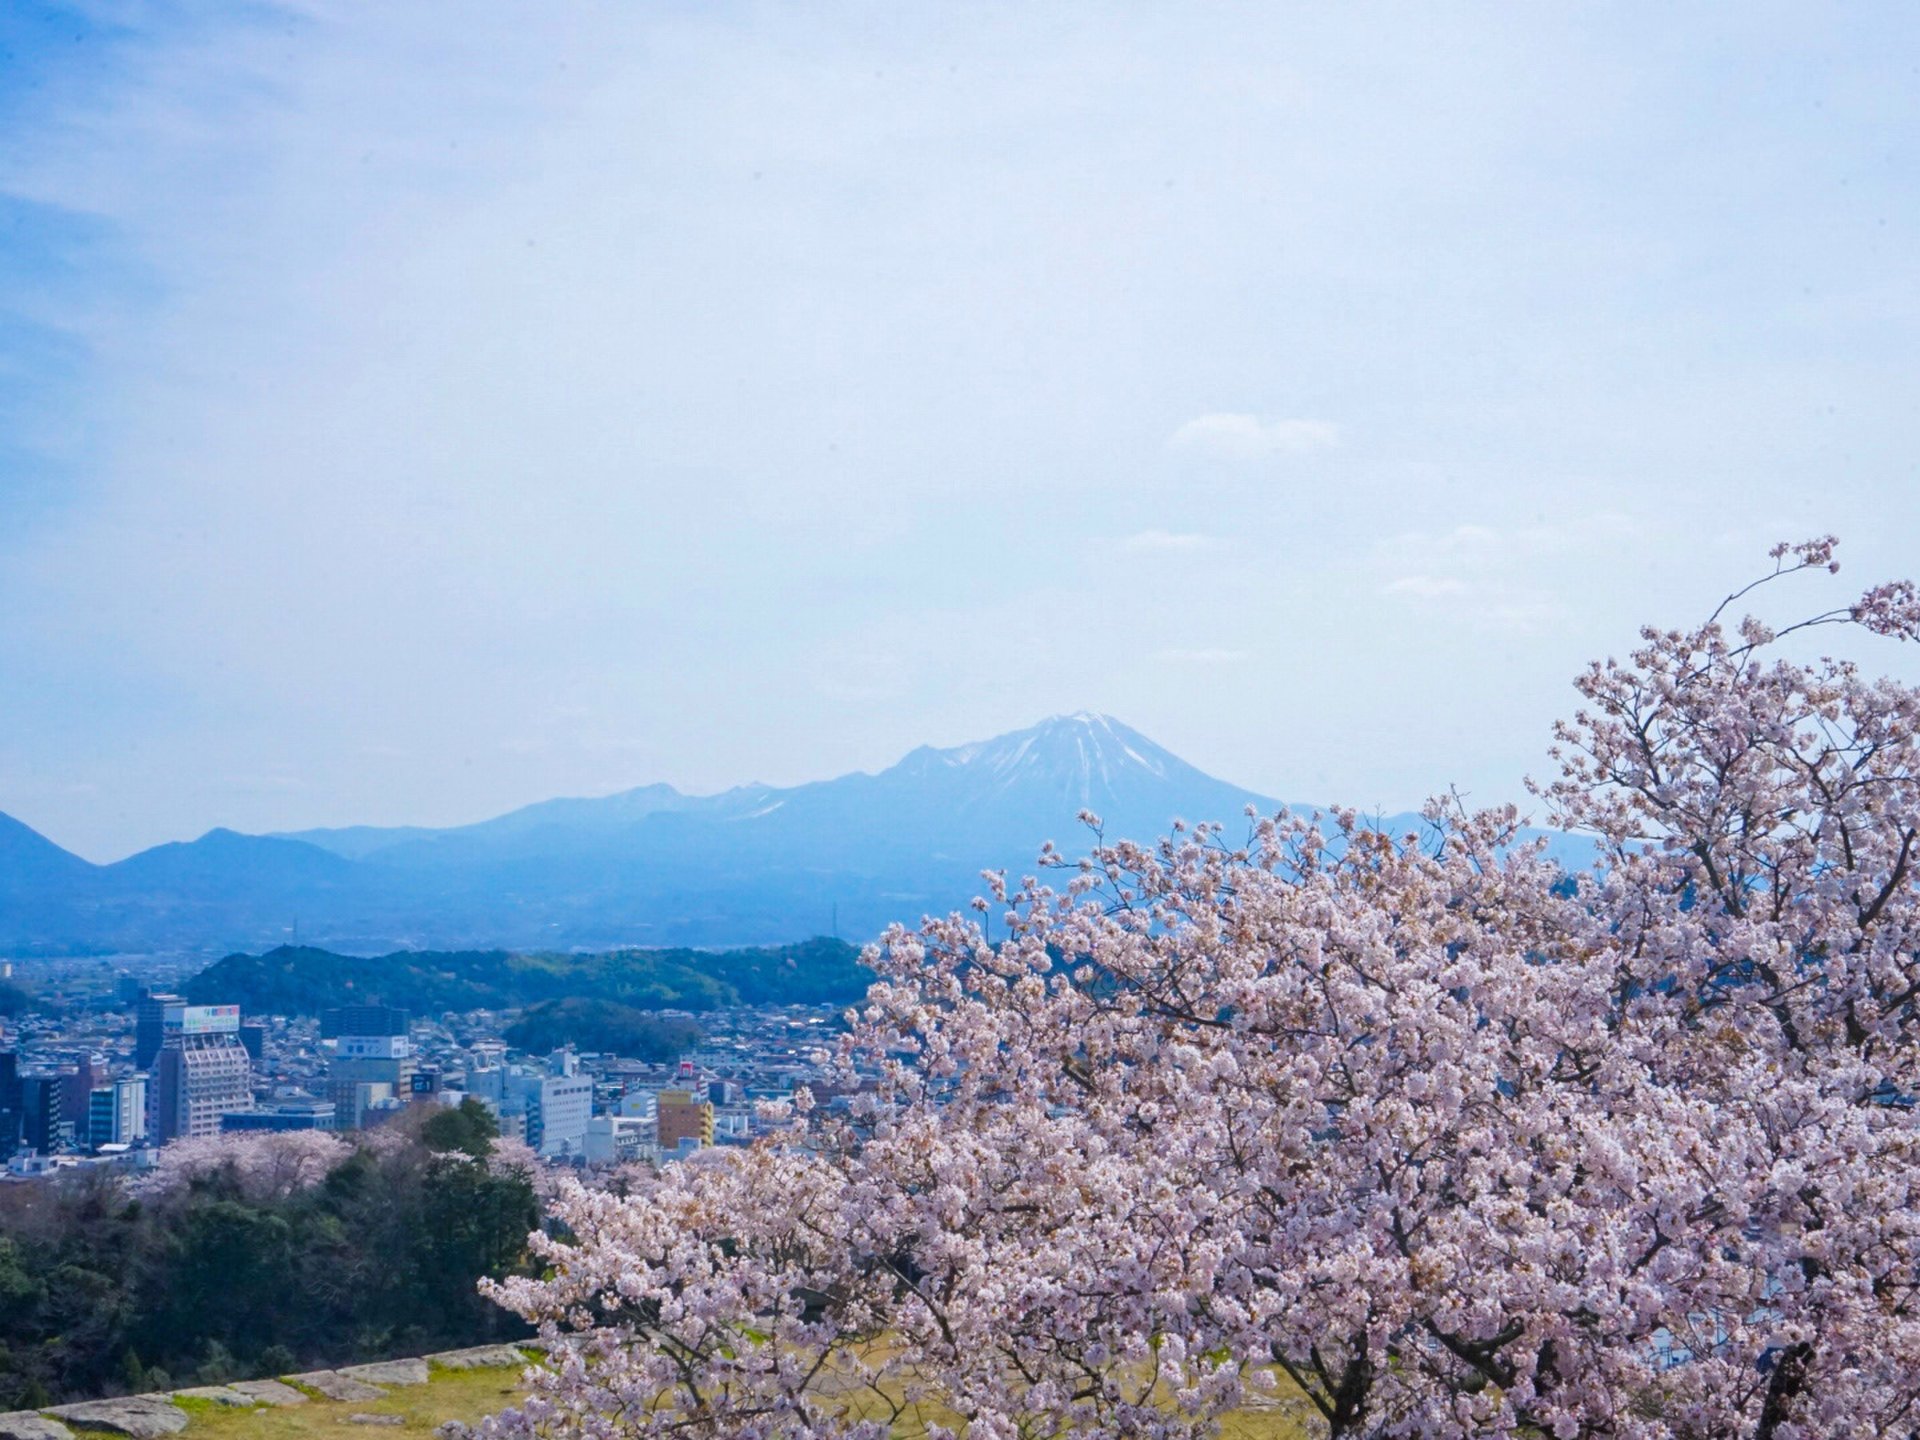 【鳥取県で行きたい】中国地方最高峰の山大山を美しく撮影できるおすすめ写真スポット